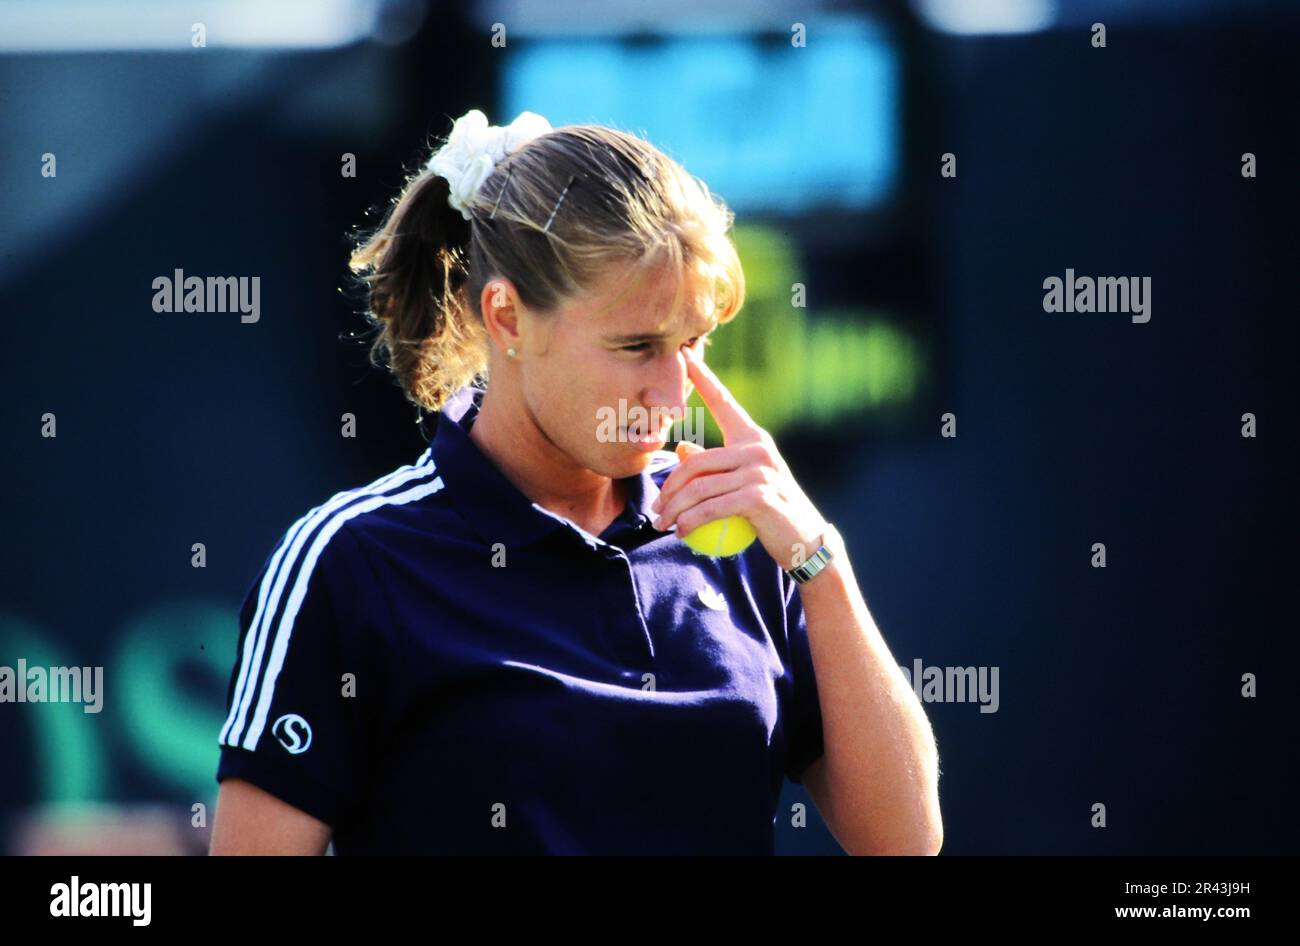 Stefanie Steffi Graf, deutsche Tennisspielerin, auf dem Tennisplatz. Stockfoto